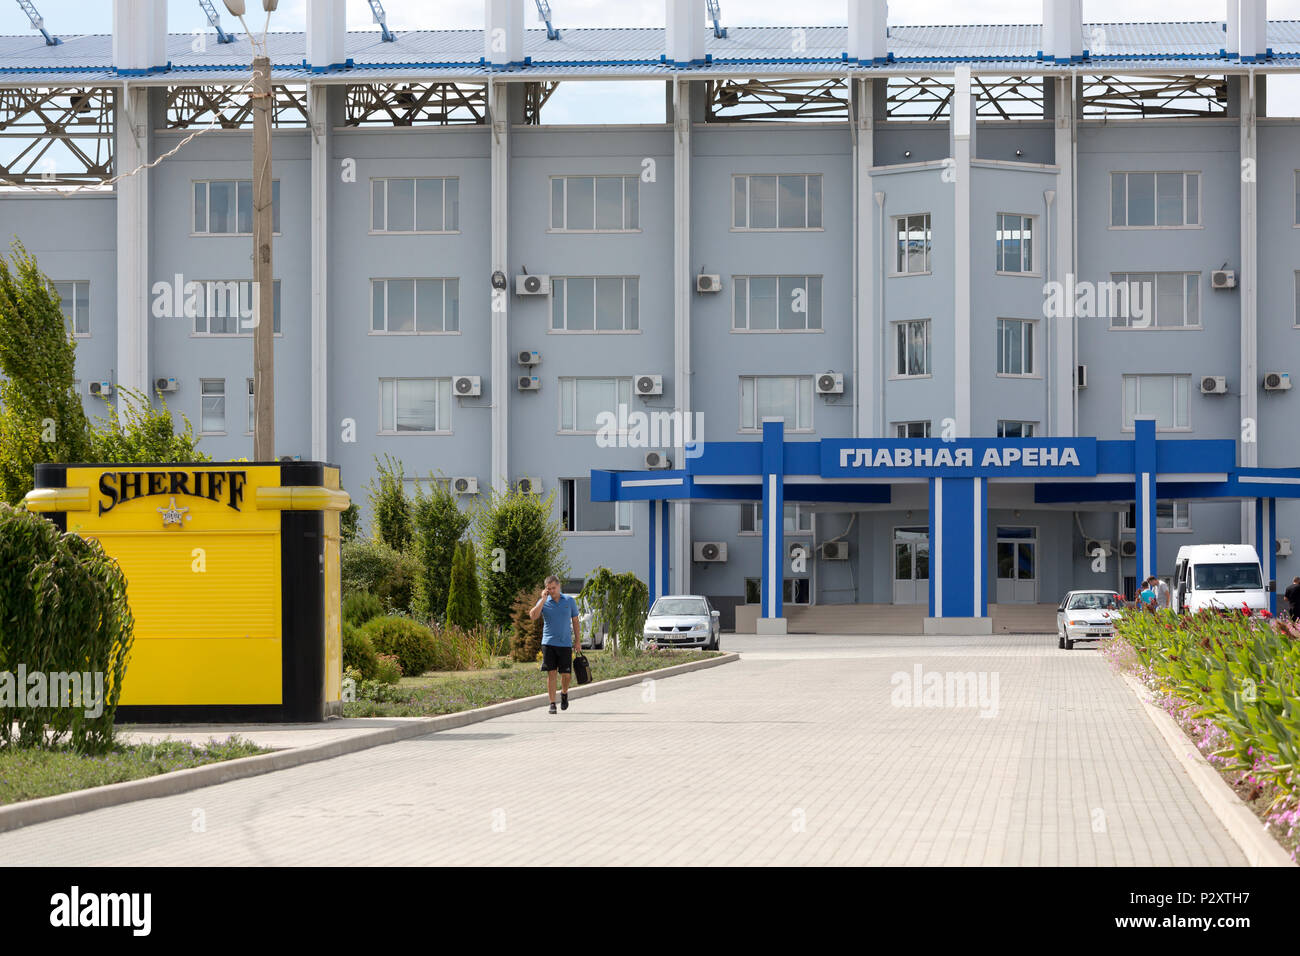 25.08.2016, Tiraspol, Transnistria Moldavia - El Sheriff complejo deportivo con dos estadios de fútbol (foto: Grosse Arena) pertenece a la multicultural Foto de stock